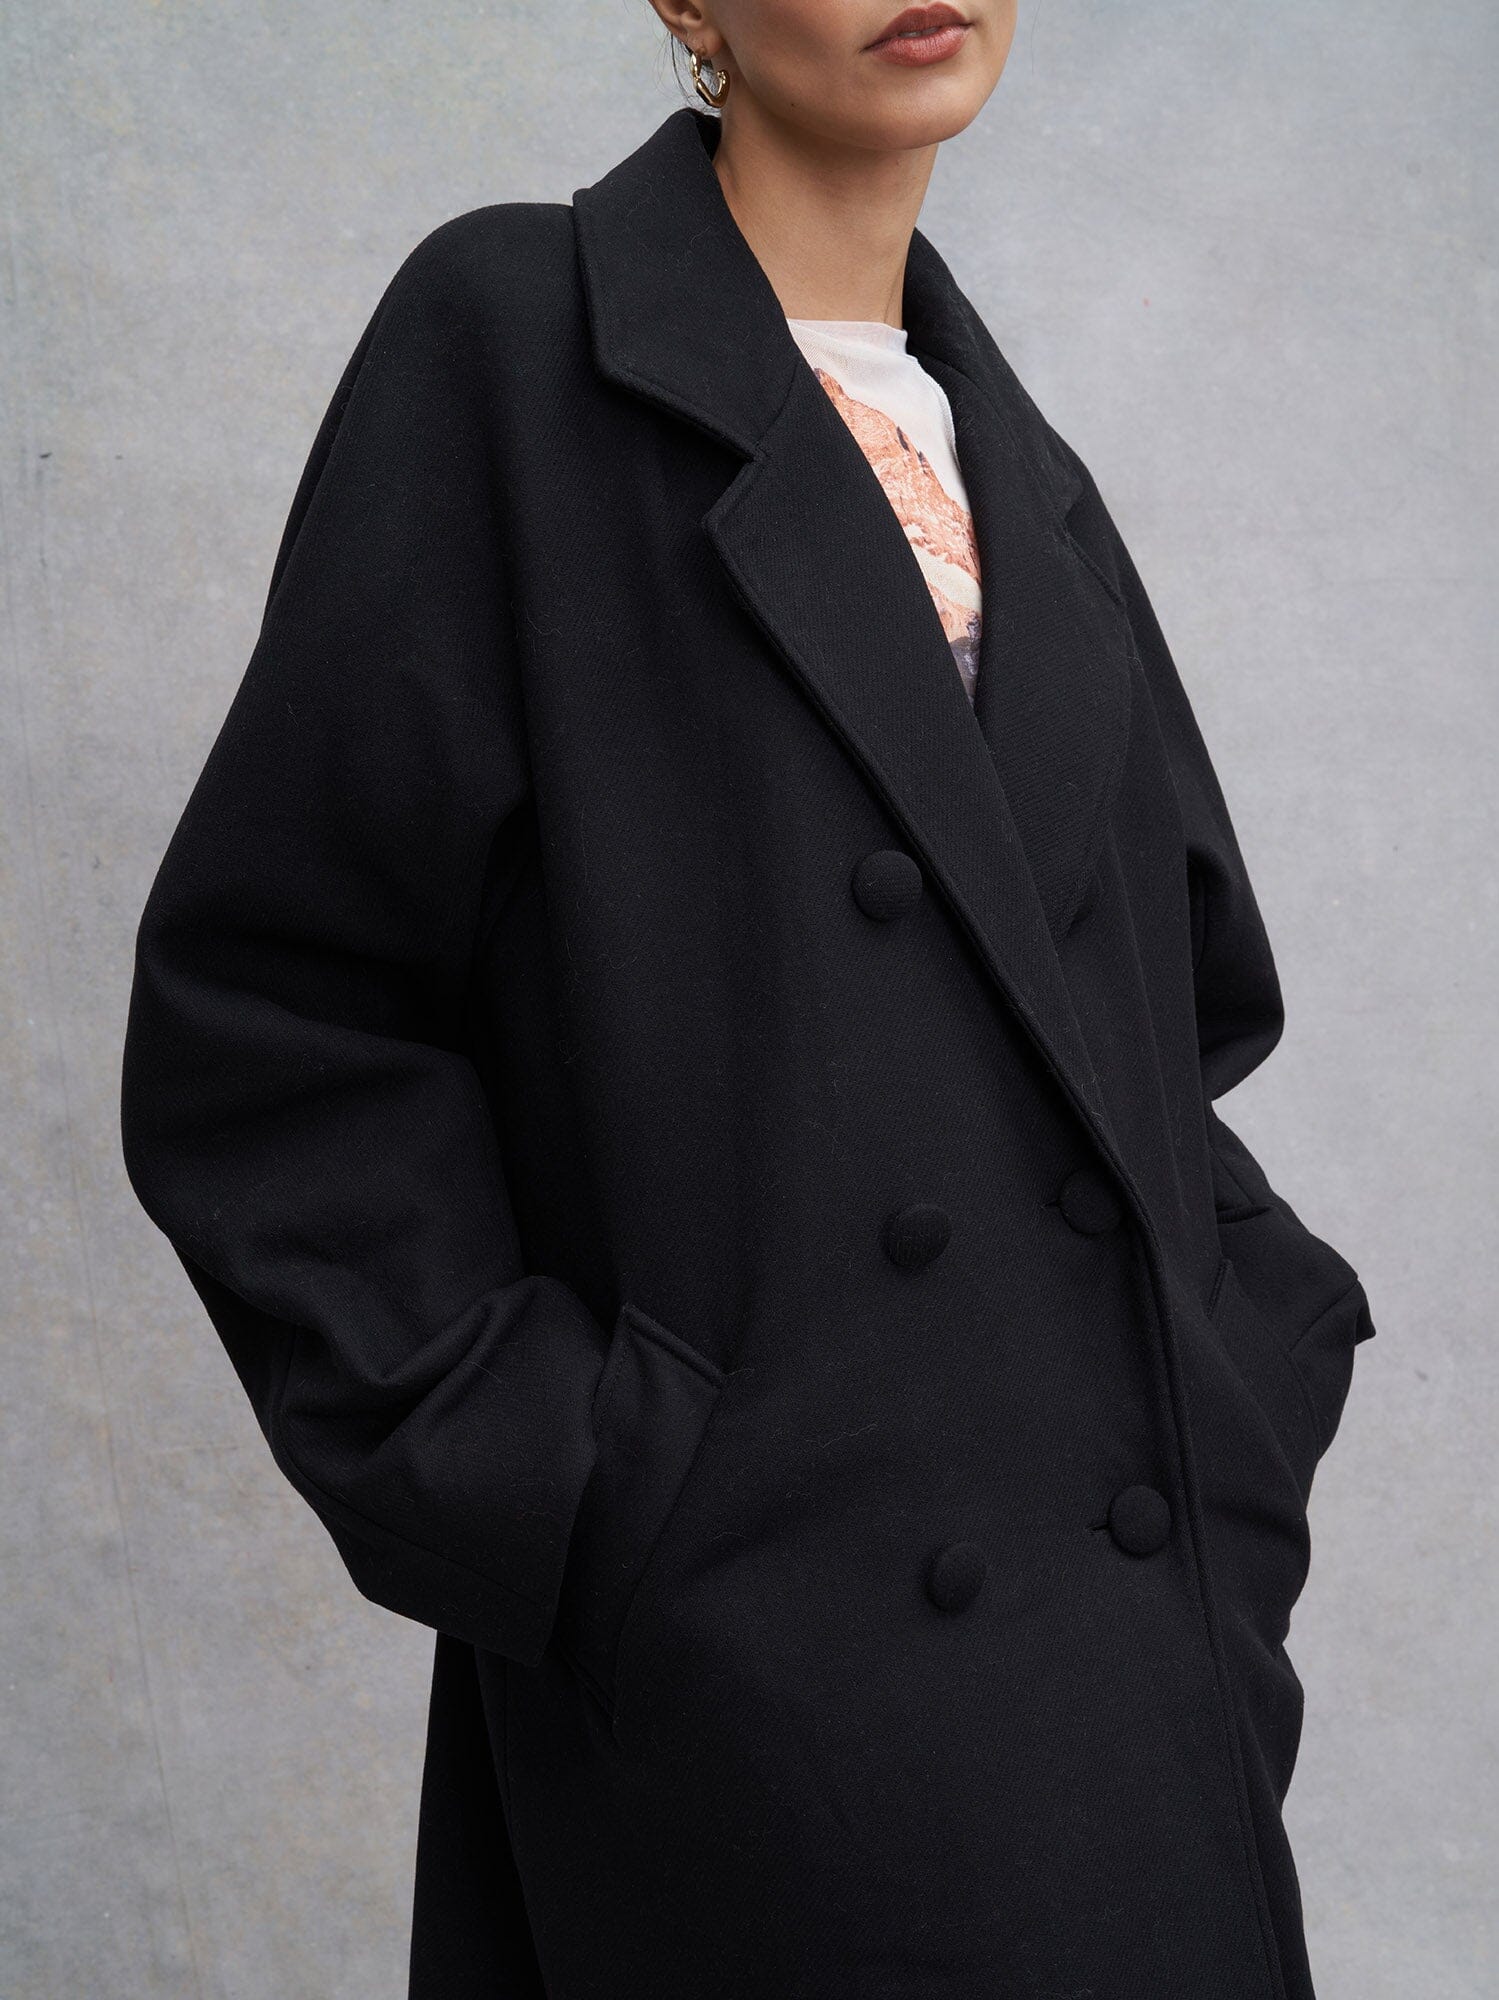 EBONY - Long Oversized Coat in Virgin Wool Sheath Collar Black Coat Fête Impériale